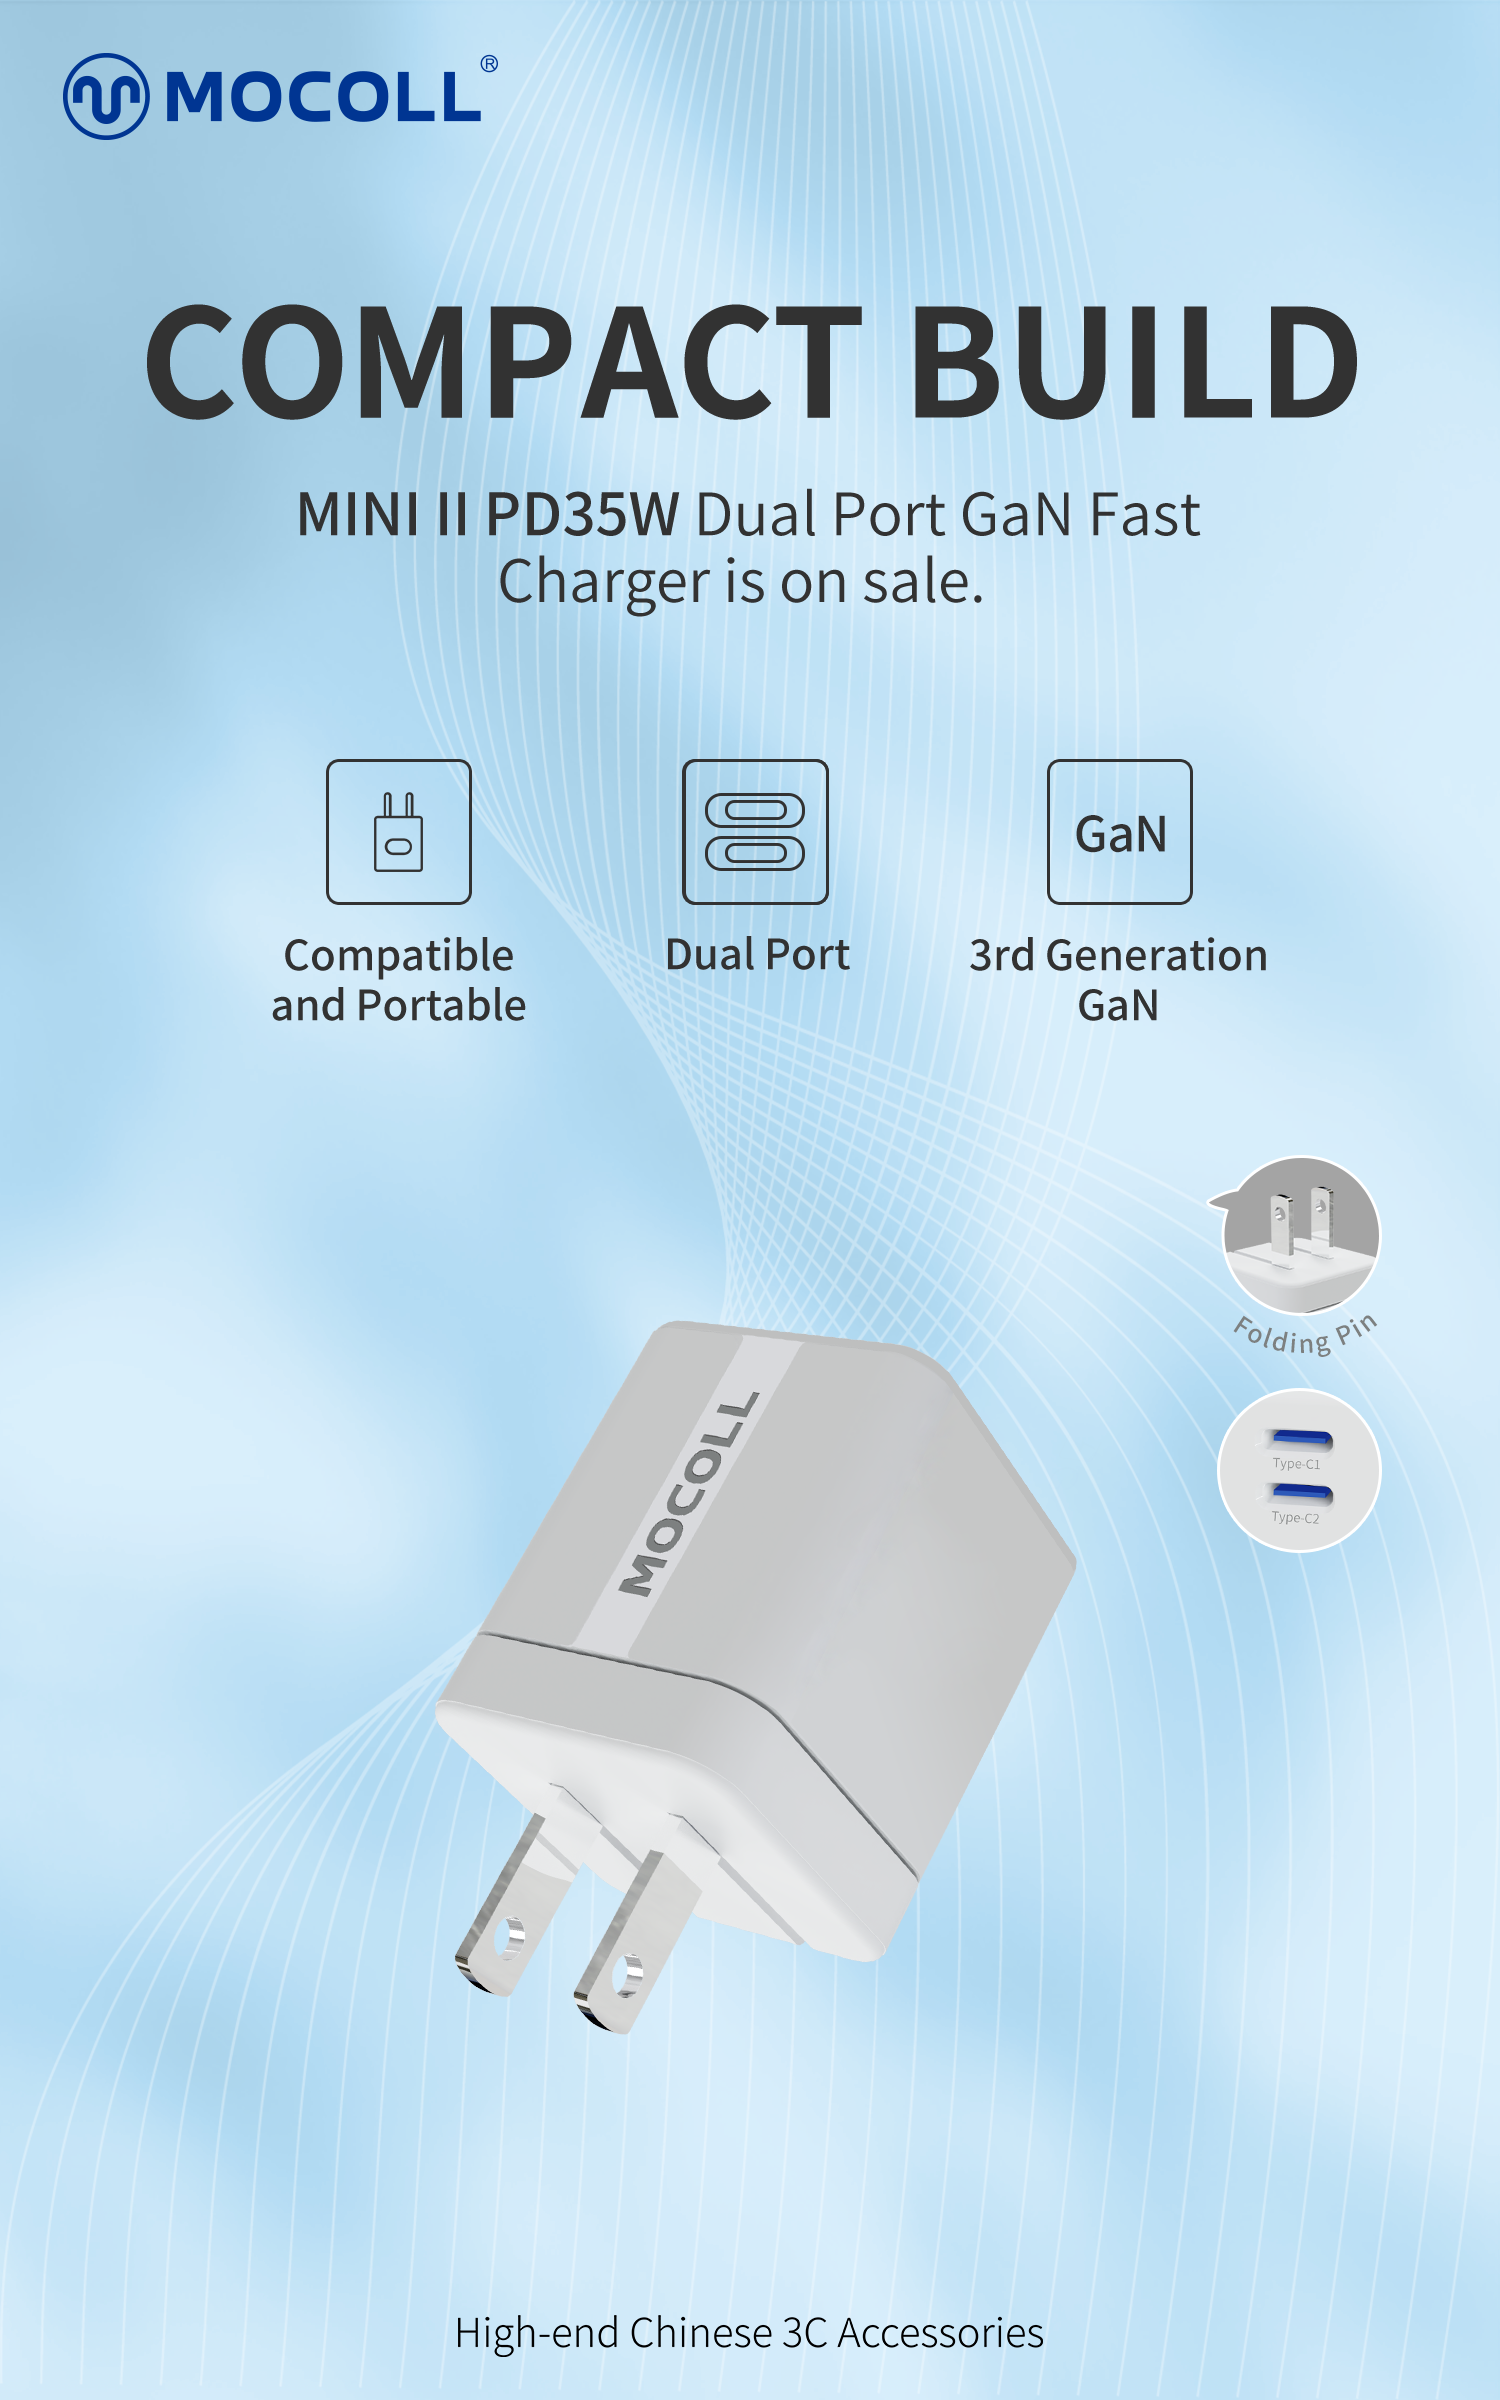 MINI II Series PD 35W Dual Port GaN Fast Charger